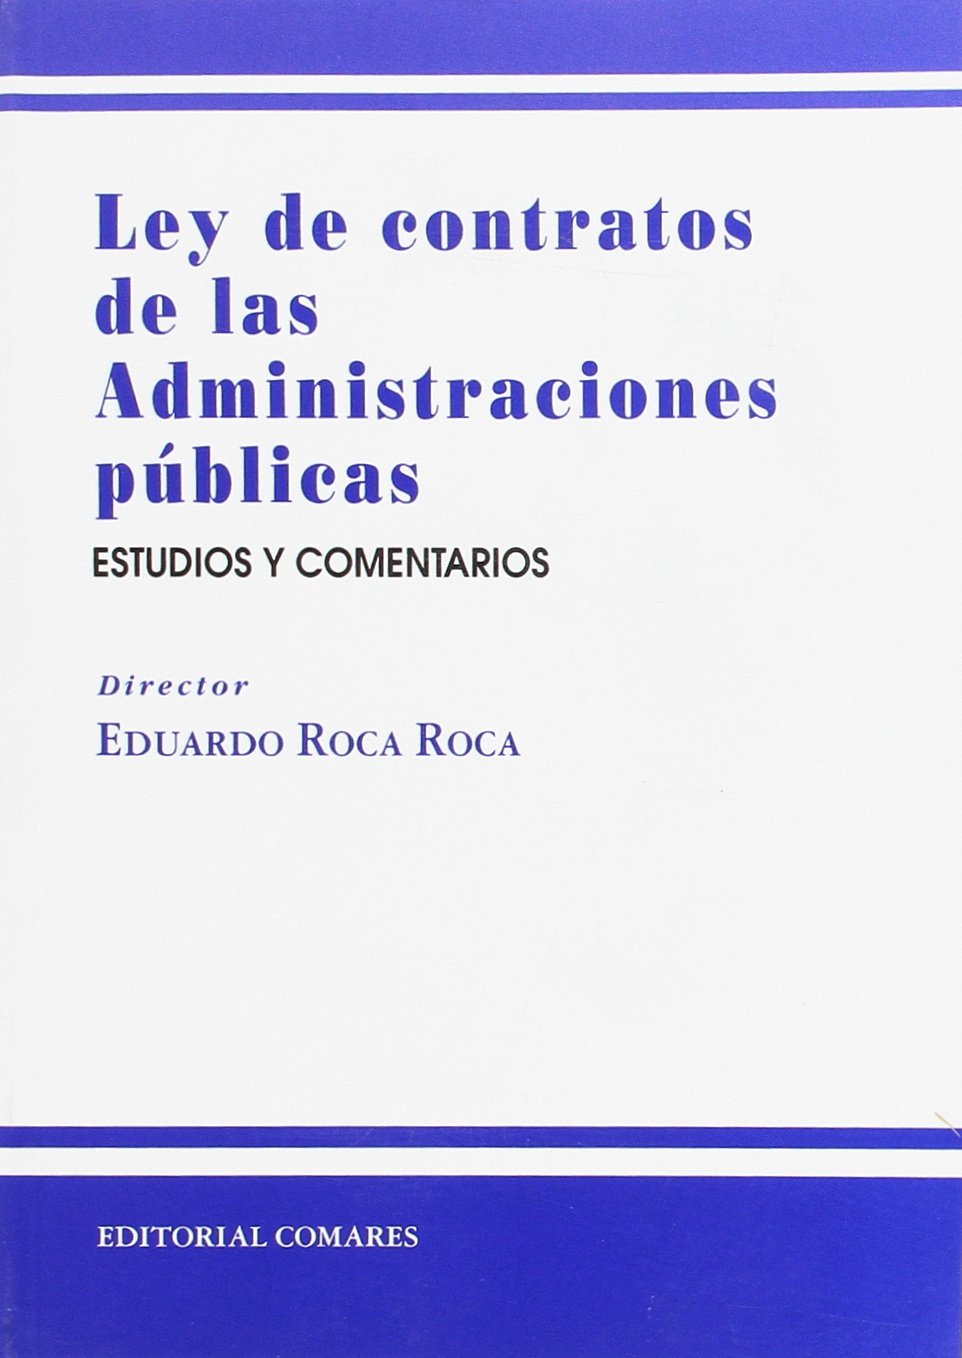 Ley contratos administraciones públicas Estudios y comentarios